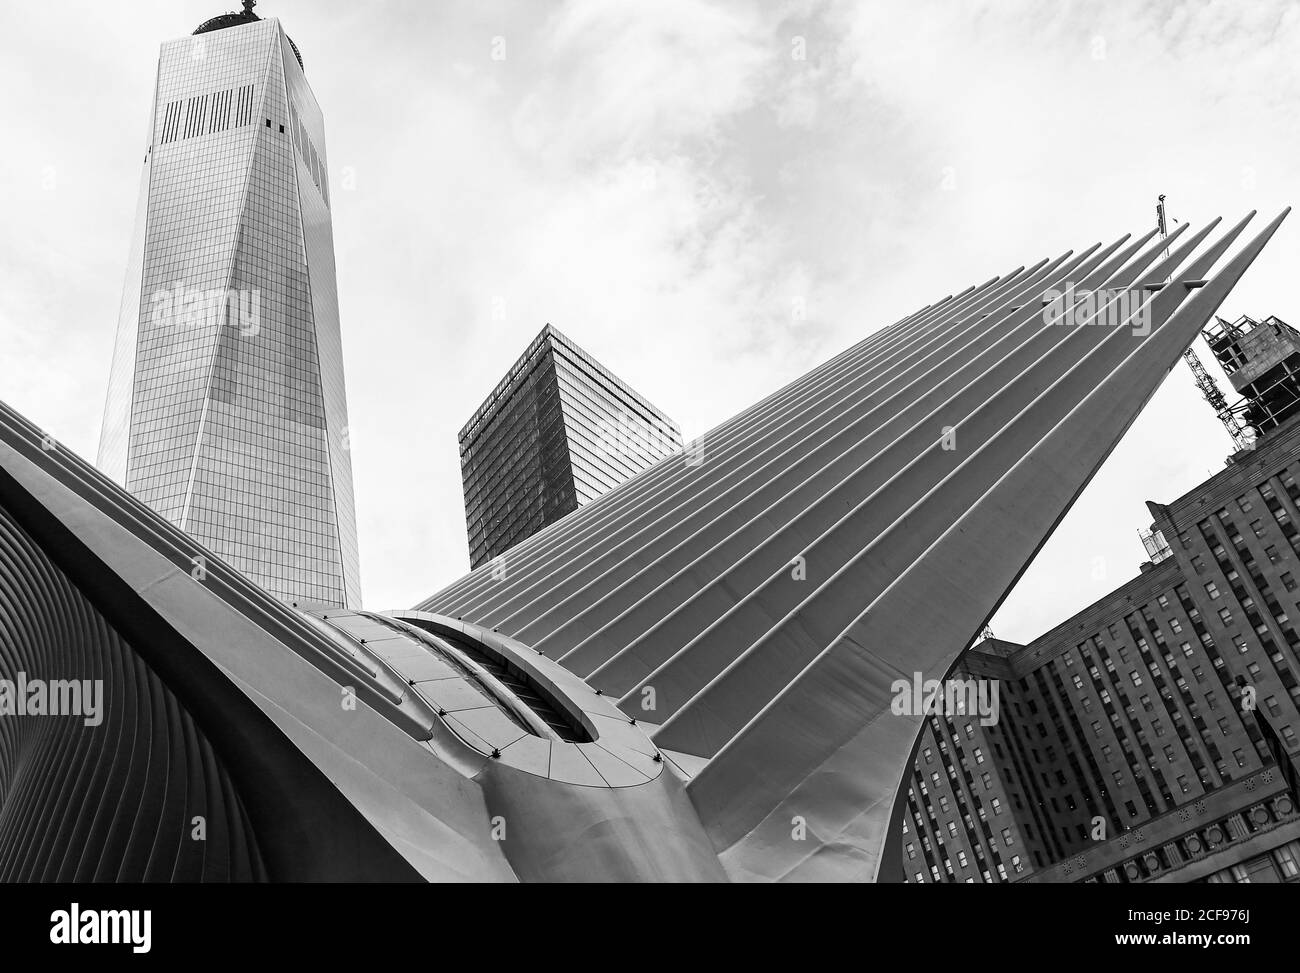 New York City, États-Unis - 7 octobre 2019 : le centre commercial Oculus à l'extérieur de Manhattan. La Tour de la liberté est visible en arrière-plan. Banque D'Images